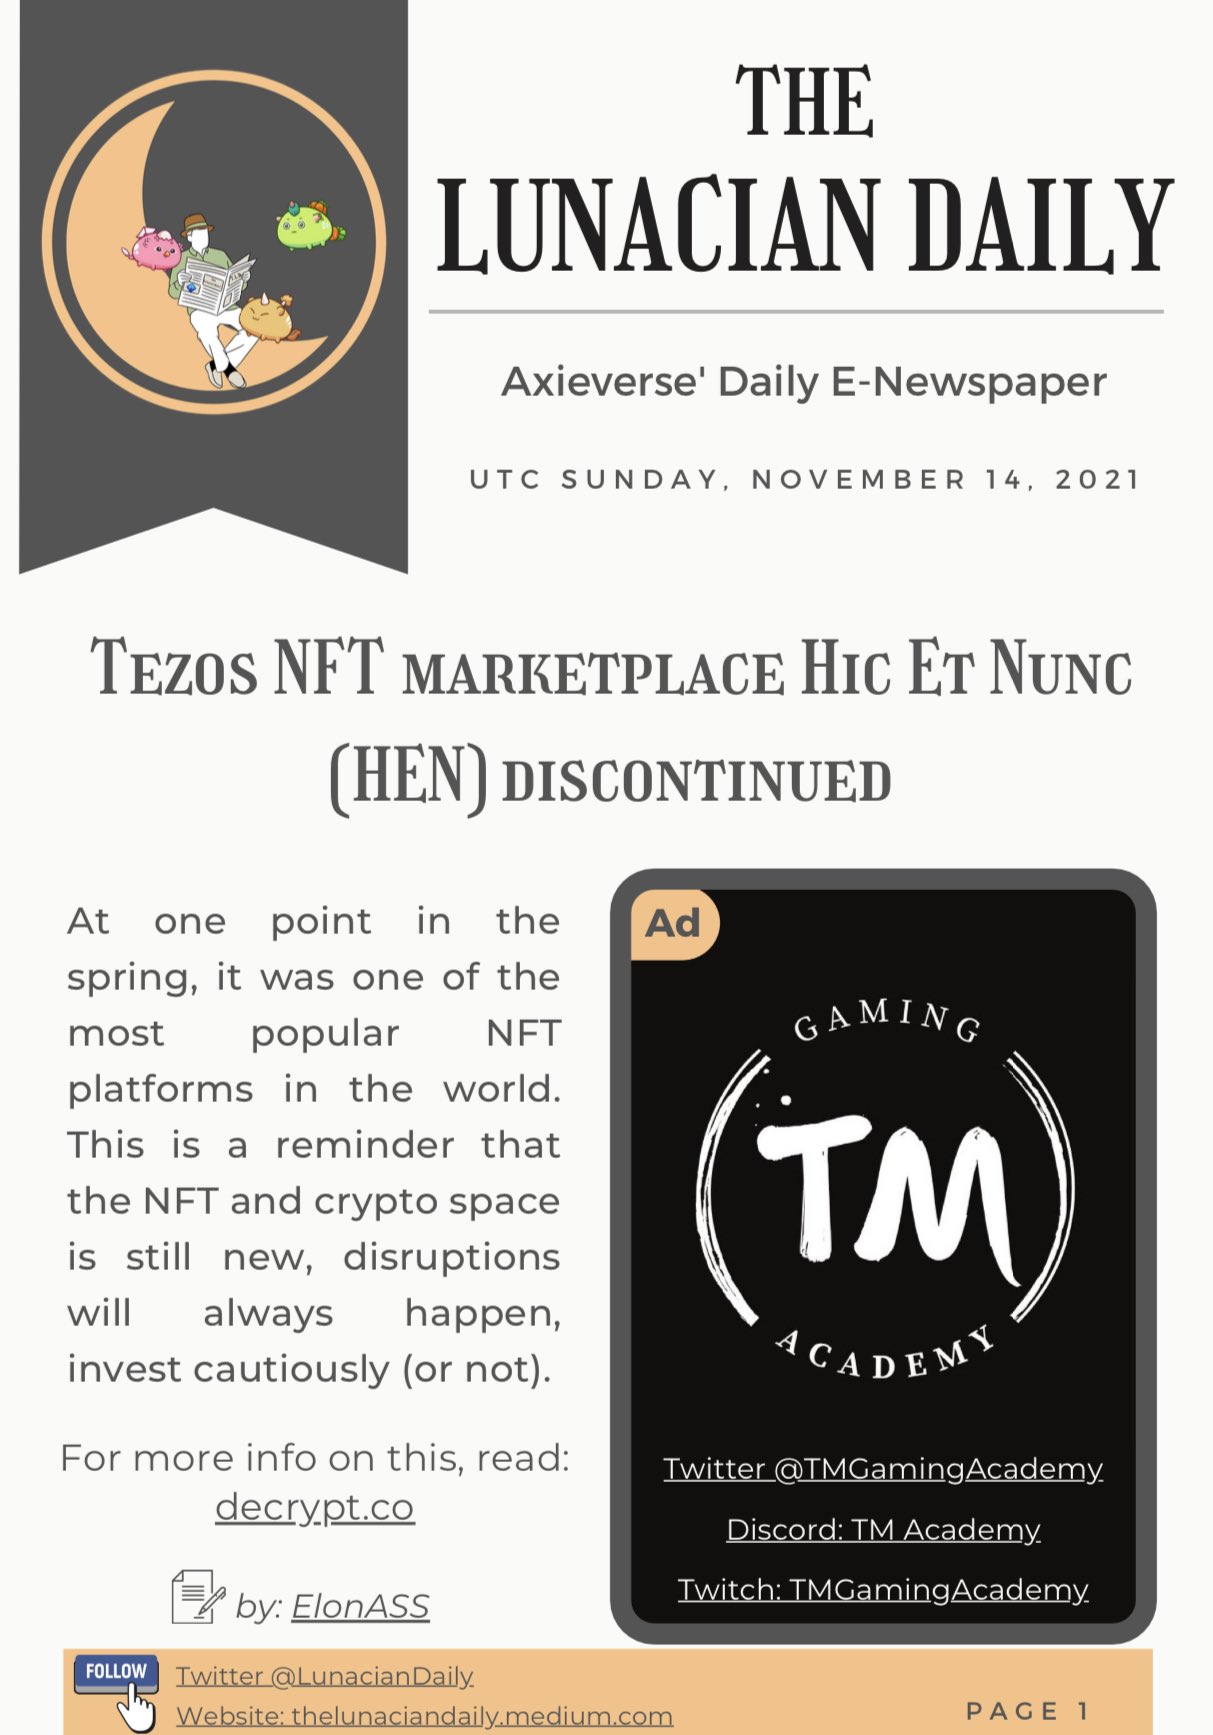 Tezos NFT Marketplace Hic et Nunc 'Discontinued' - Decrypt